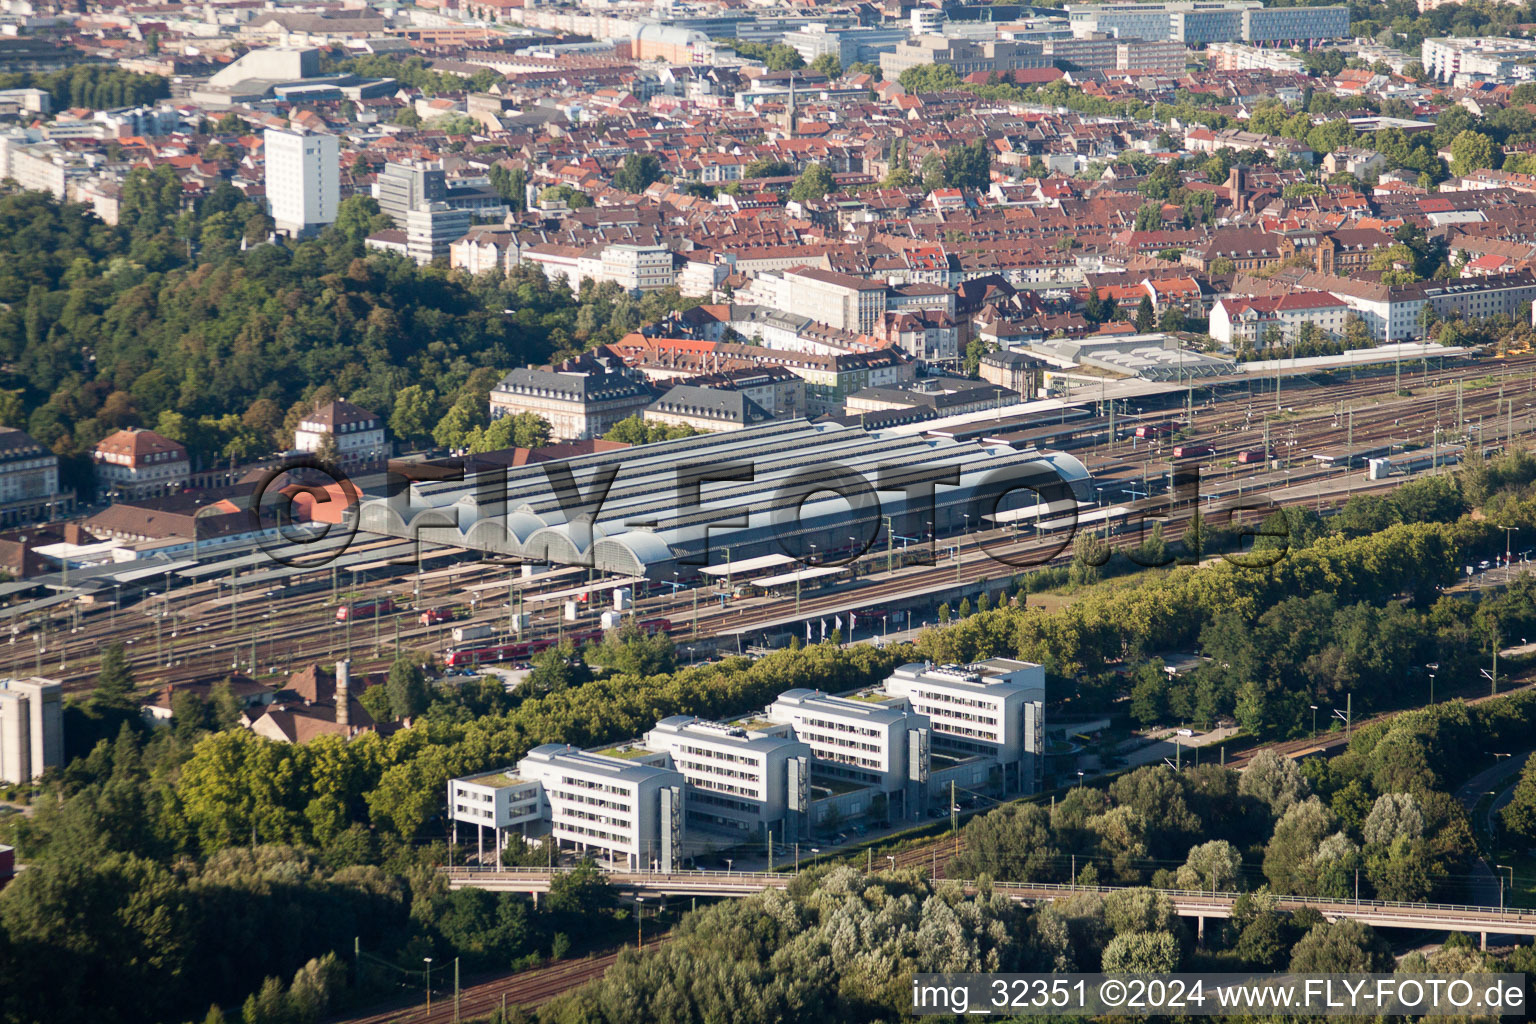 Luftbild von Gleisverlauf und Gebäude des Hauptbahnhofes der Deutschen Bahn in Karlsruhe im Ortsteil Südweststadt im Bundesland Baden-Württemberg, Deutschland